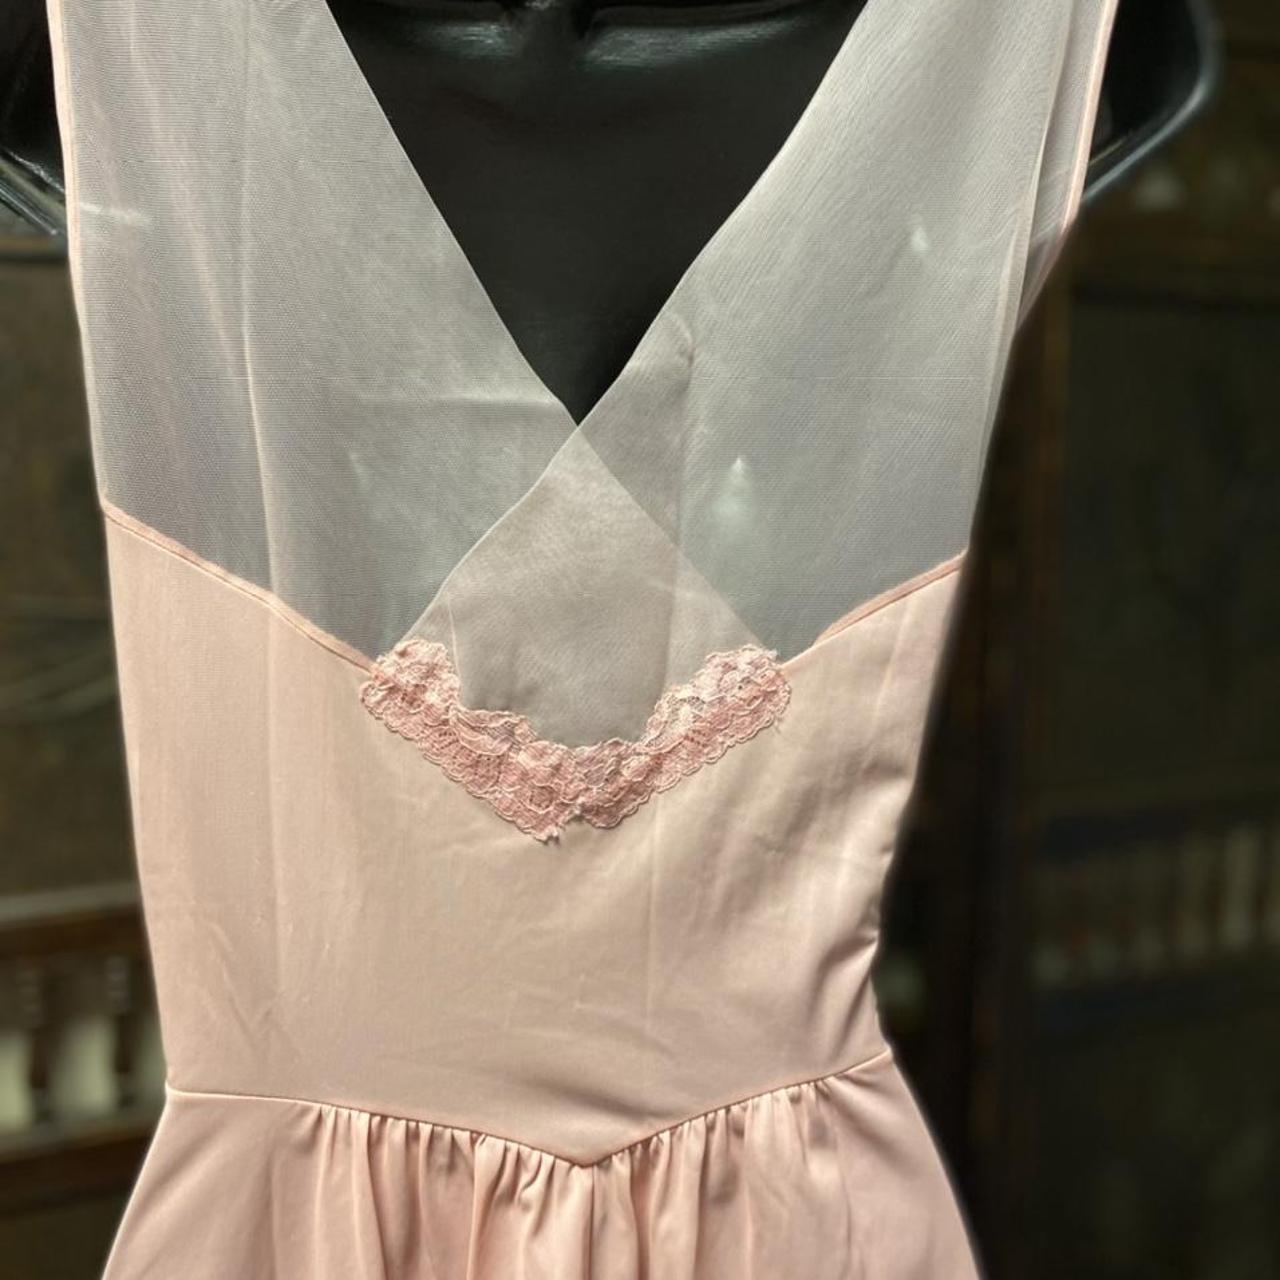 Vanity Fair Women's Pink Nightwear (3)